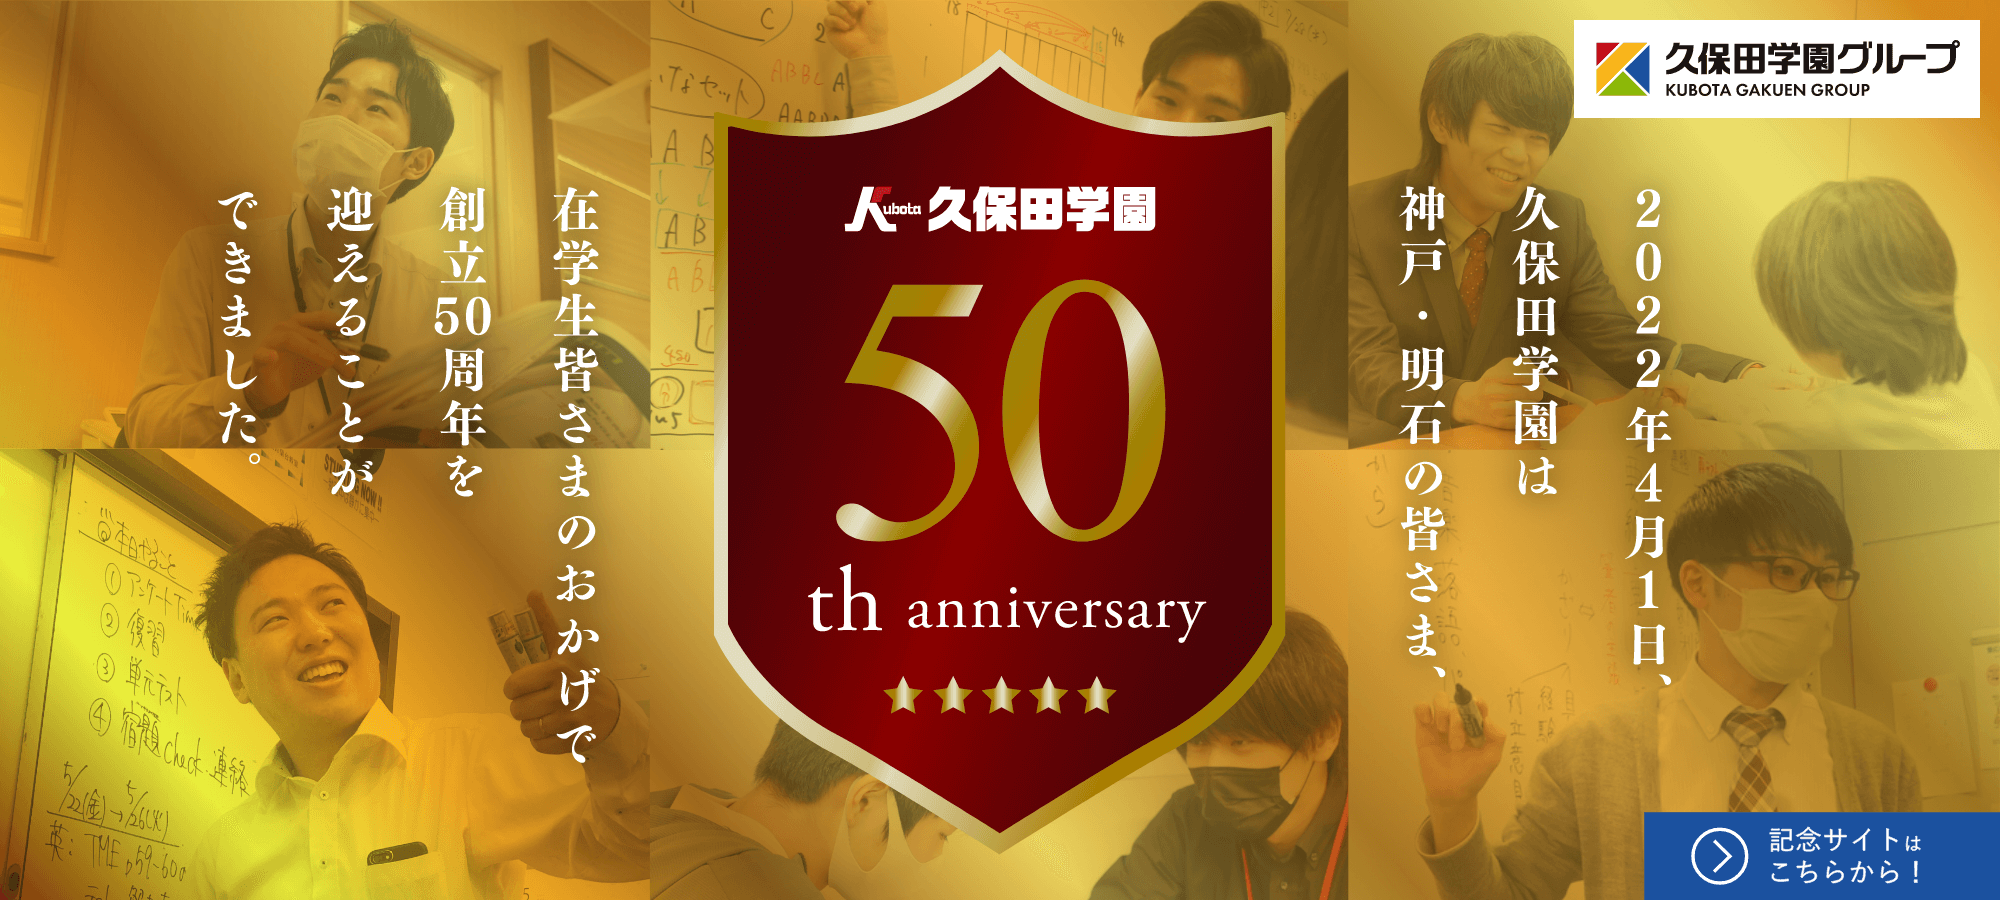 2022年4月1日、久保田学園は神戸・明石の皆さま、在学生皆さまのおかげで創立50周年を迎えることができました。